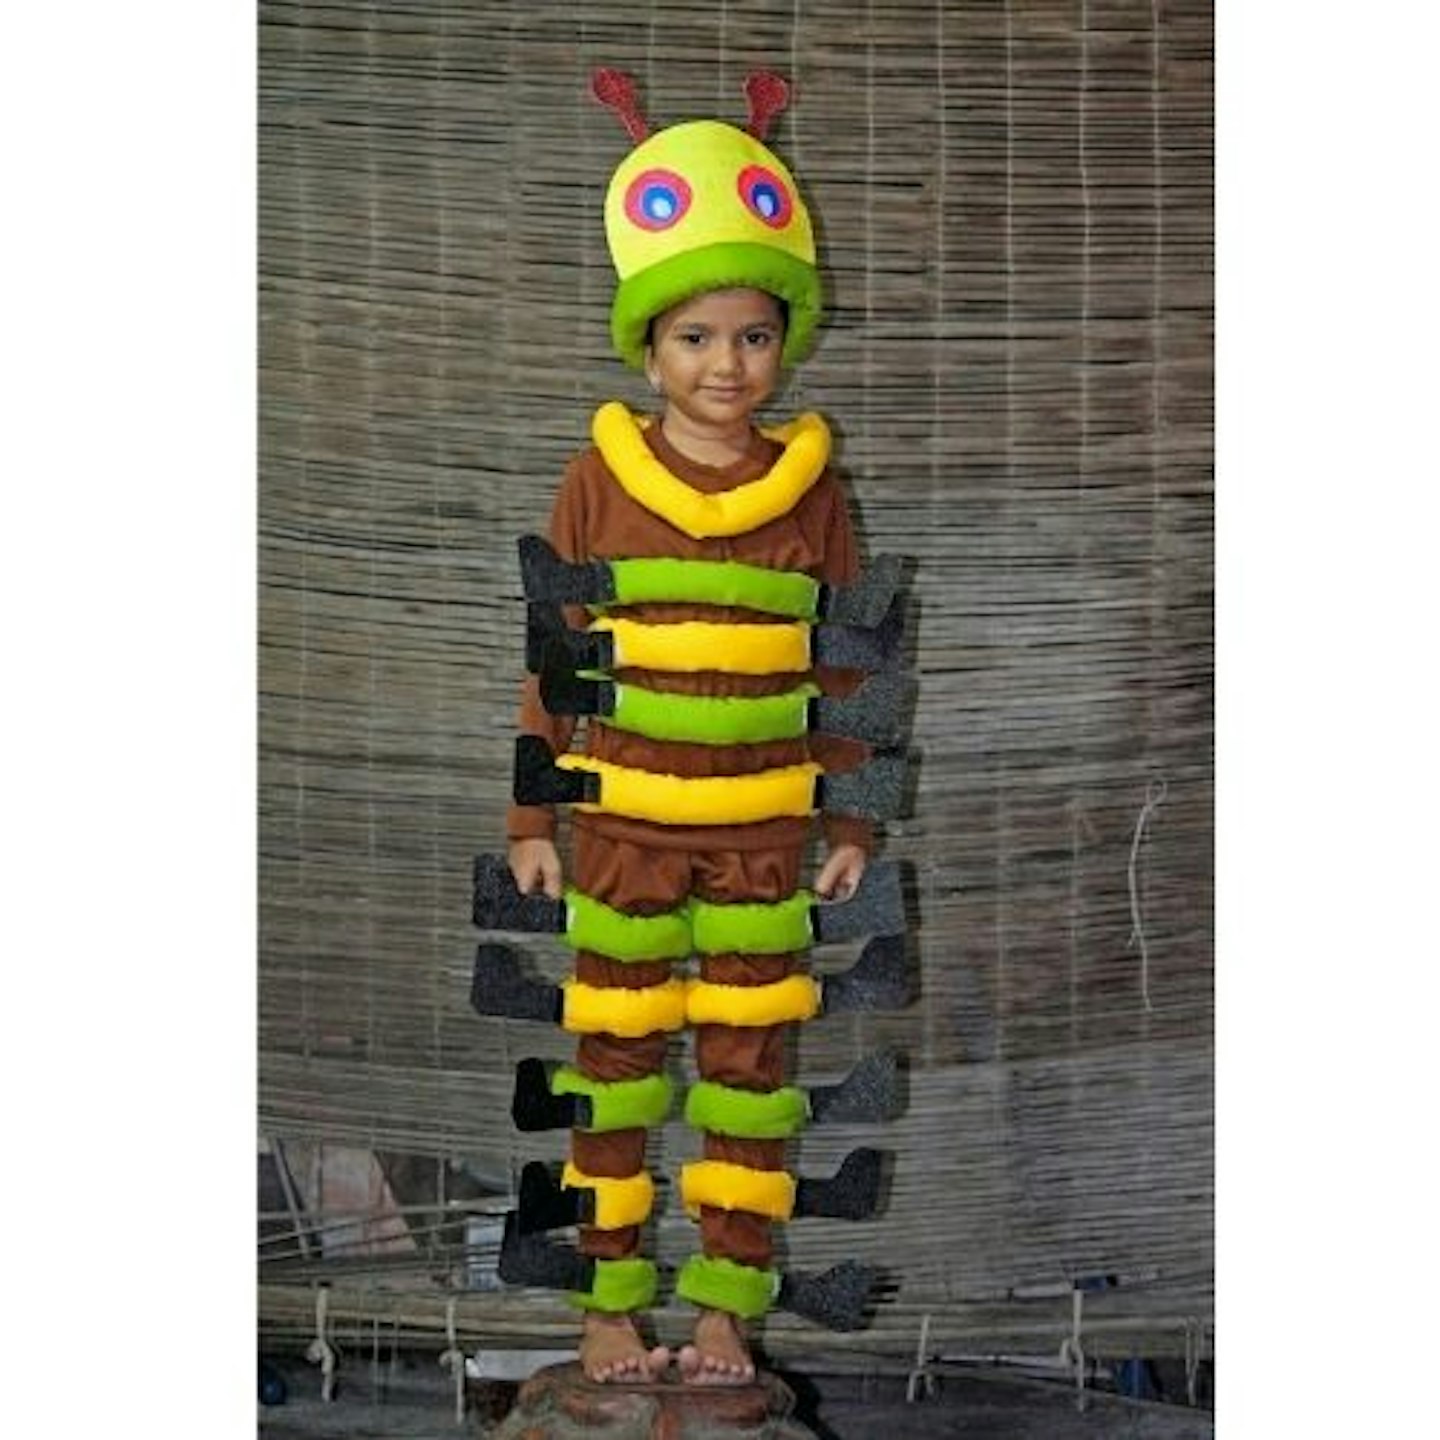 Caterpillar costume